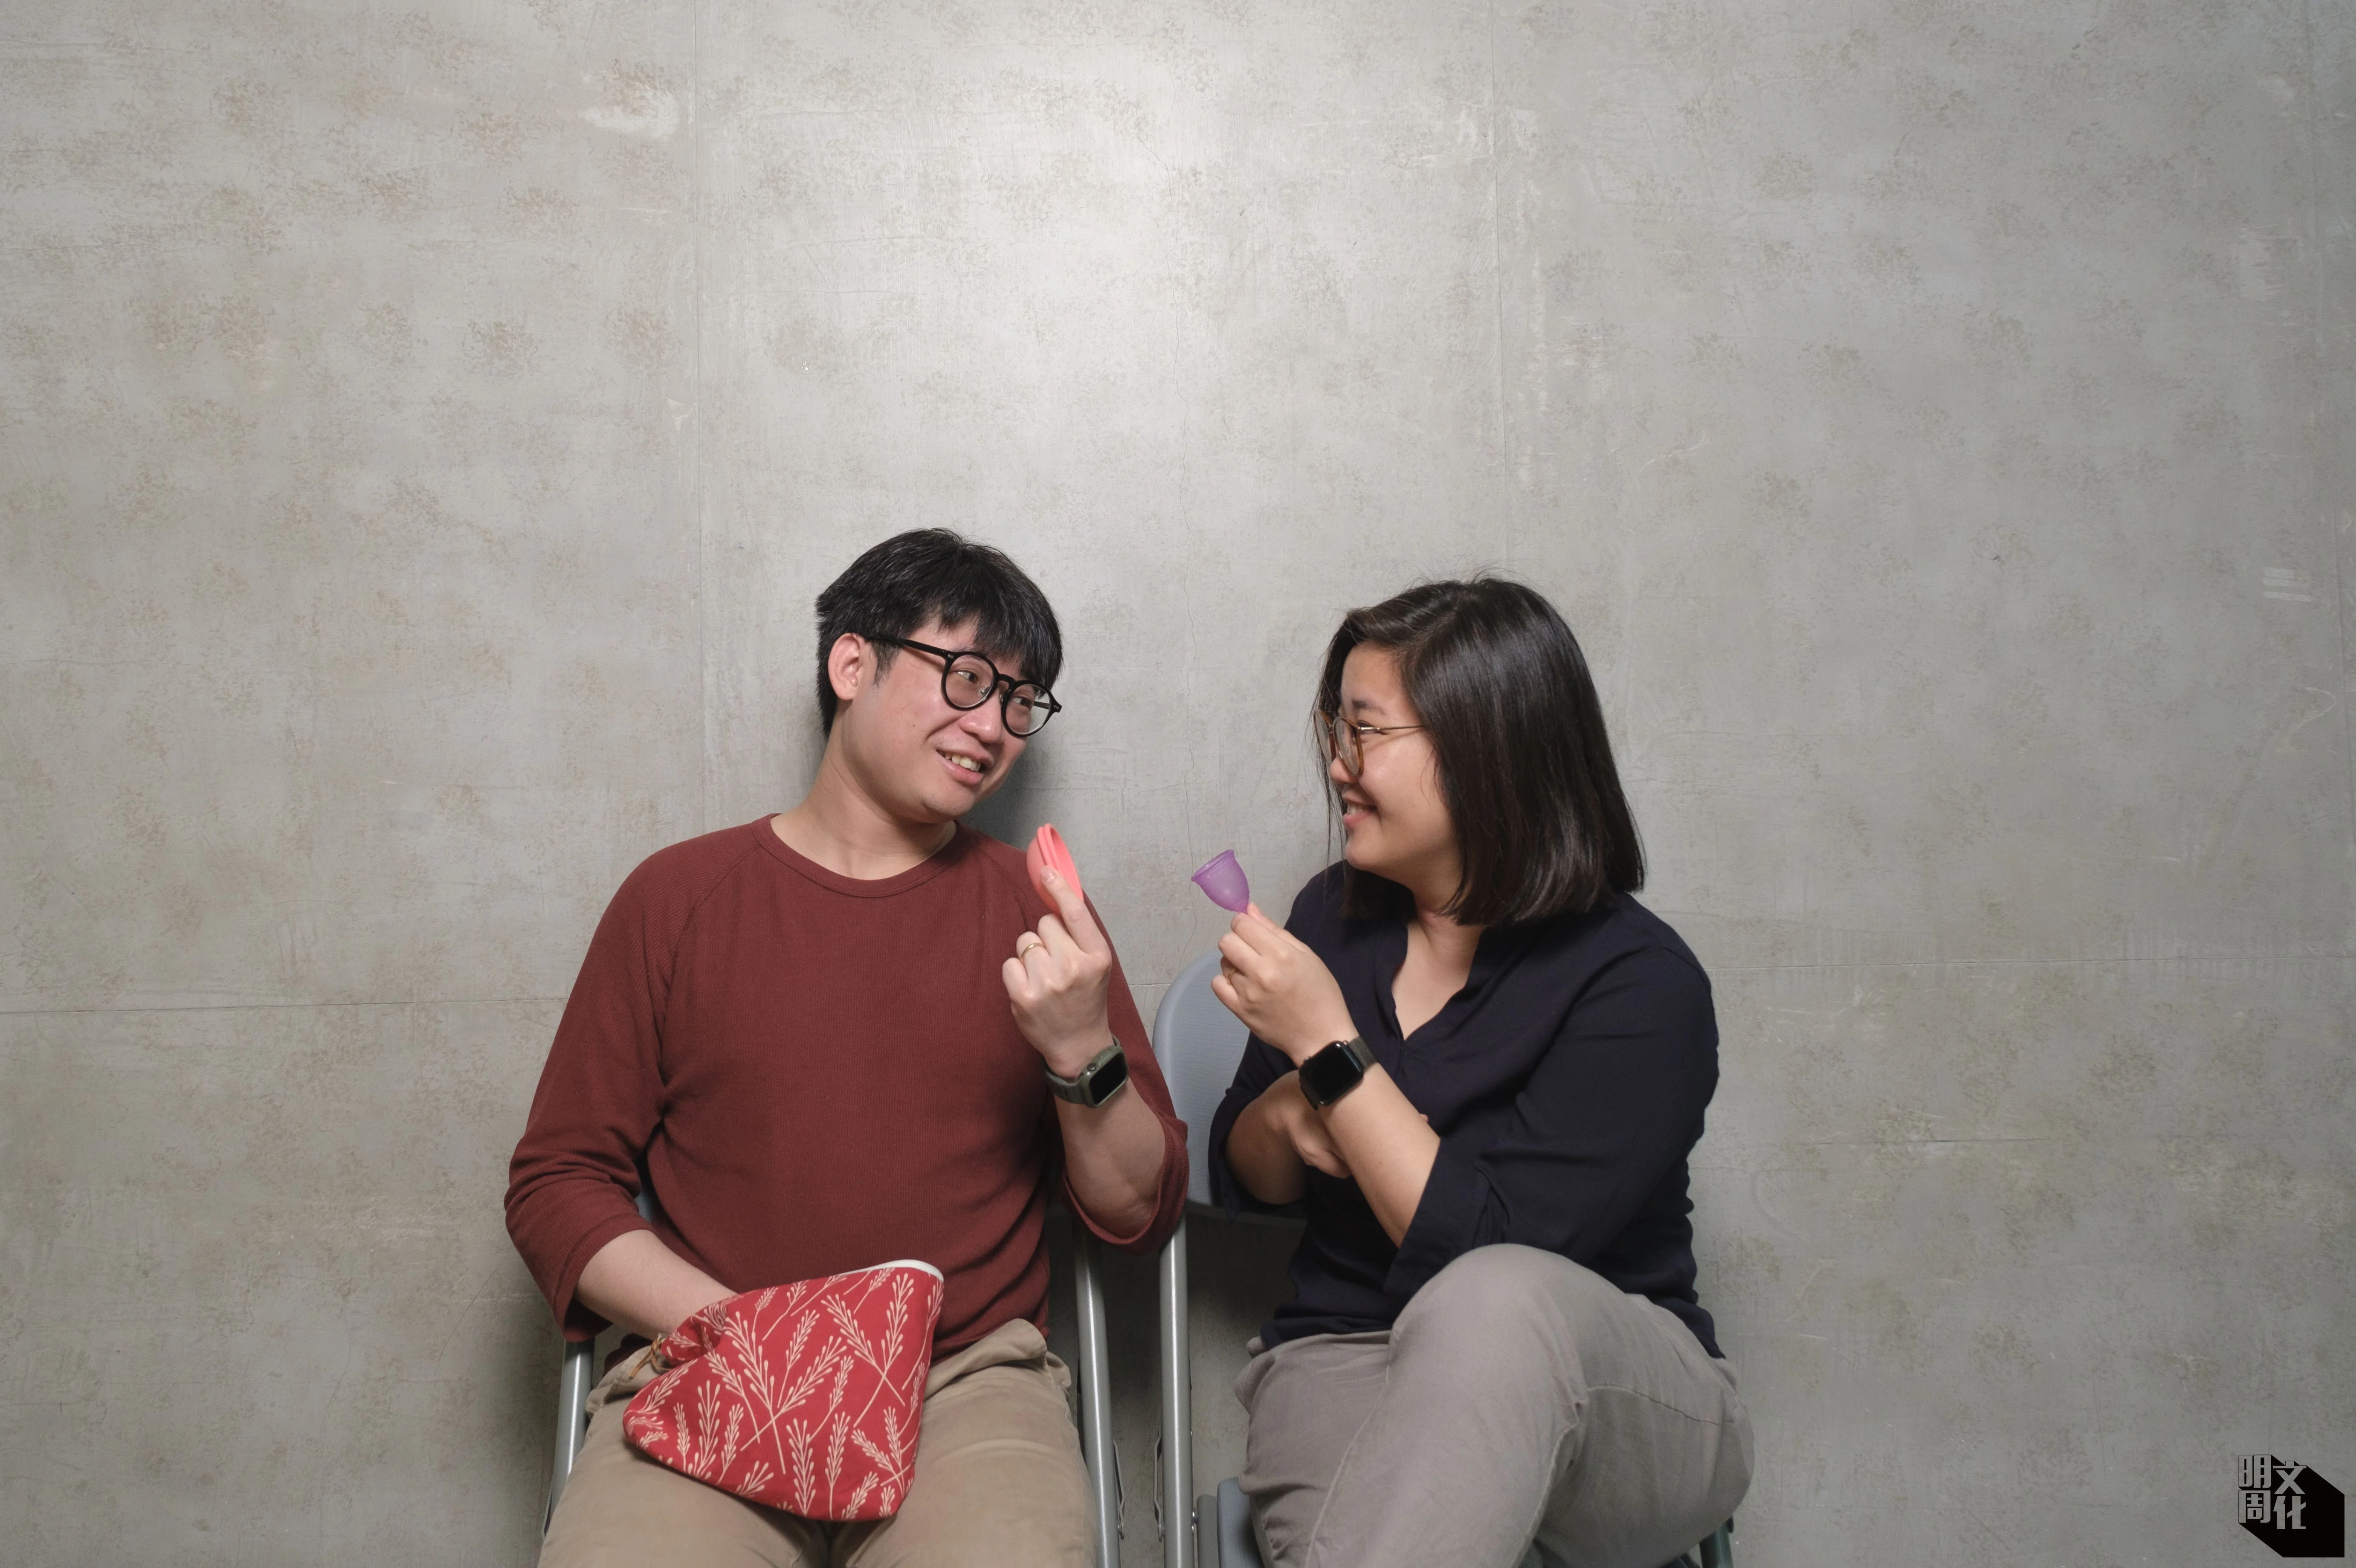 happeriod創辦人、Free Periods HK共同創辦人陳鈺霖是天祐的太太，兩人致力推廣正向的月經教育。